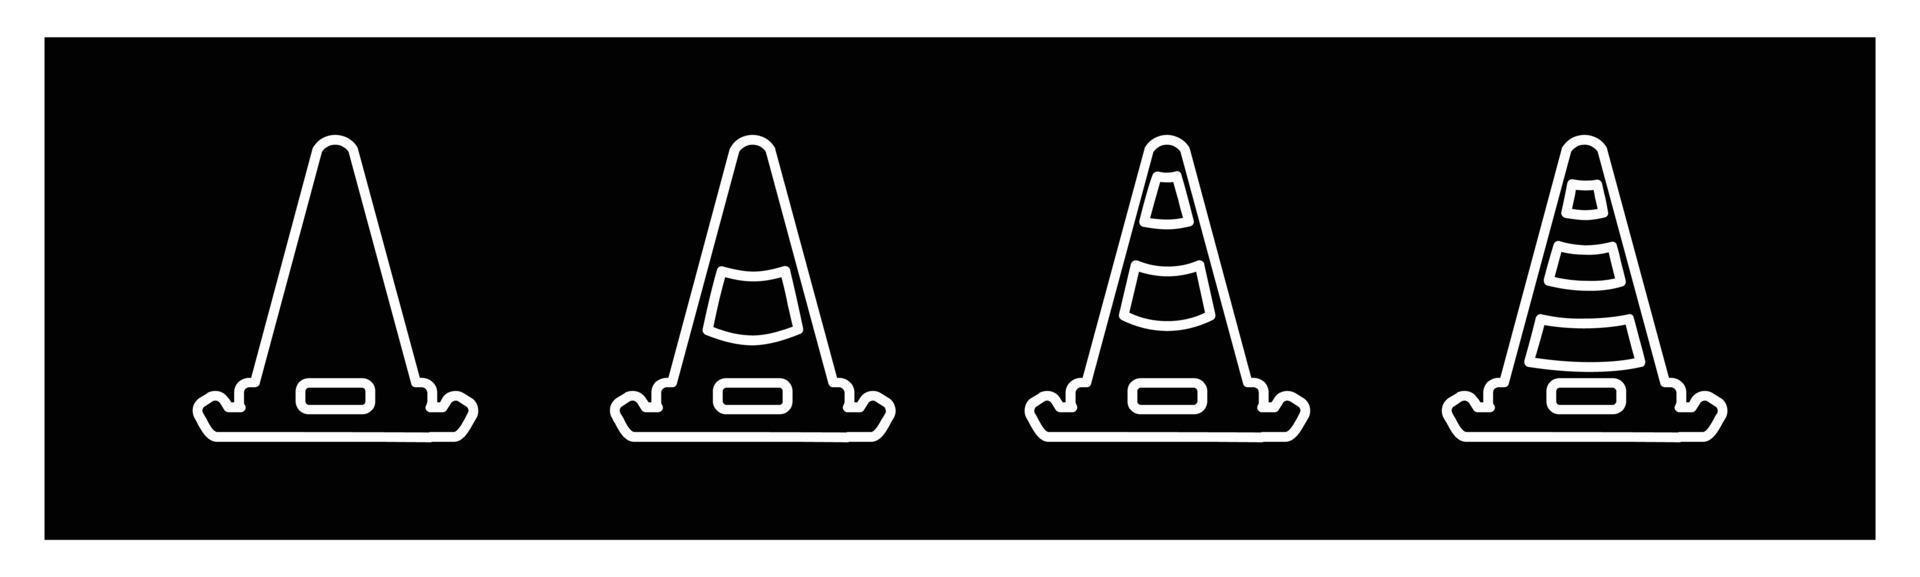 icona del cono in un vettore di stile diverso, due icone vettoriali colorate e nere progettate, set di icone del cono di traffico, illustrazione vettoriale del simbolo della barriera